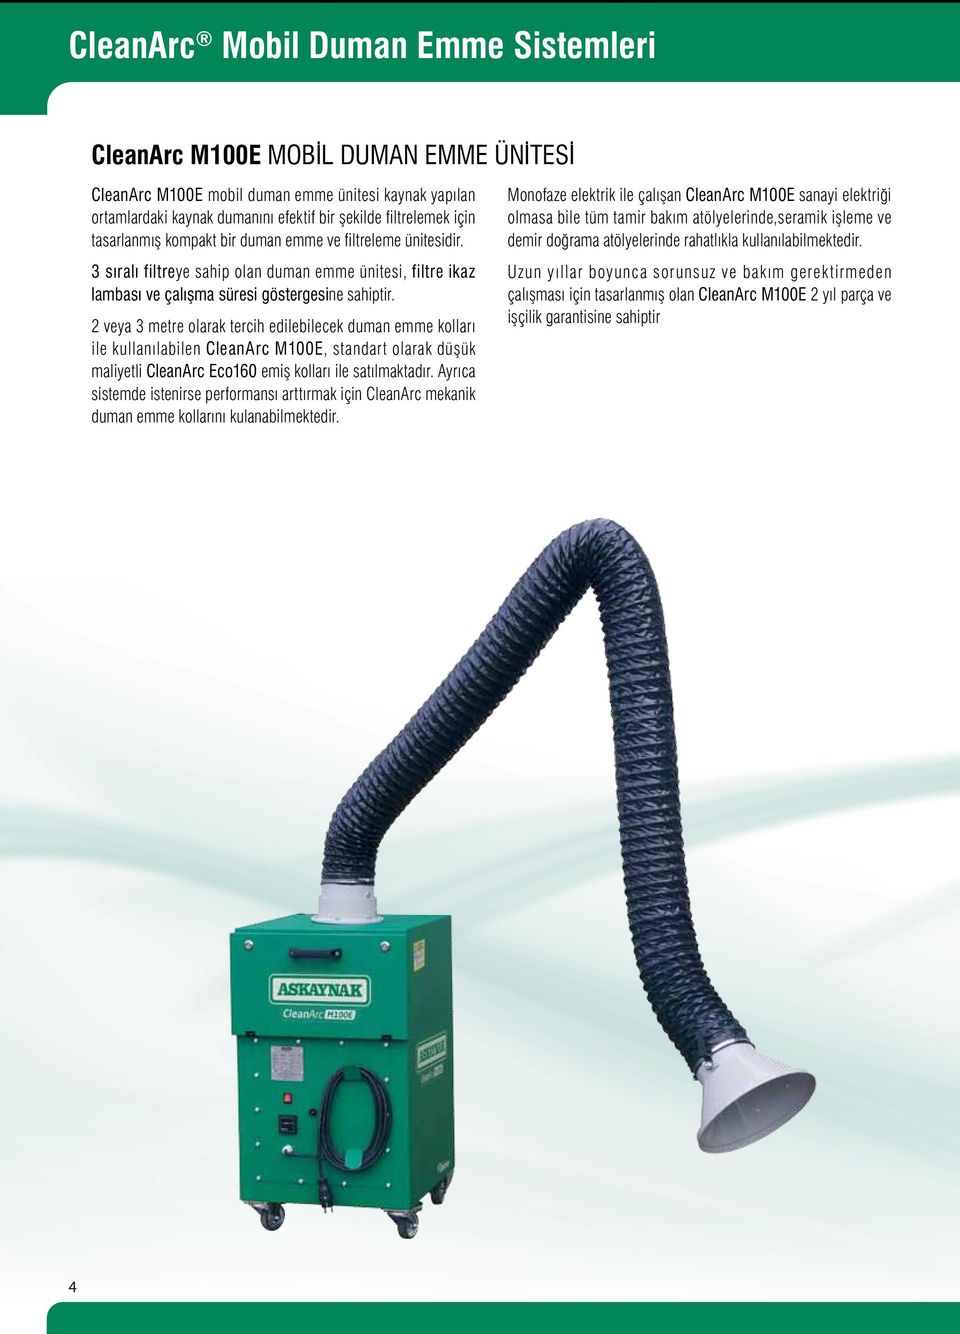 2 veya 3 metre olarak tercih edilebilecek duman emme kolları ile kullanılabilen CleanArc M100E, standart olarak düşük maliyetli CleanArc Eco160 emiş kolları ile satılmaktadır.